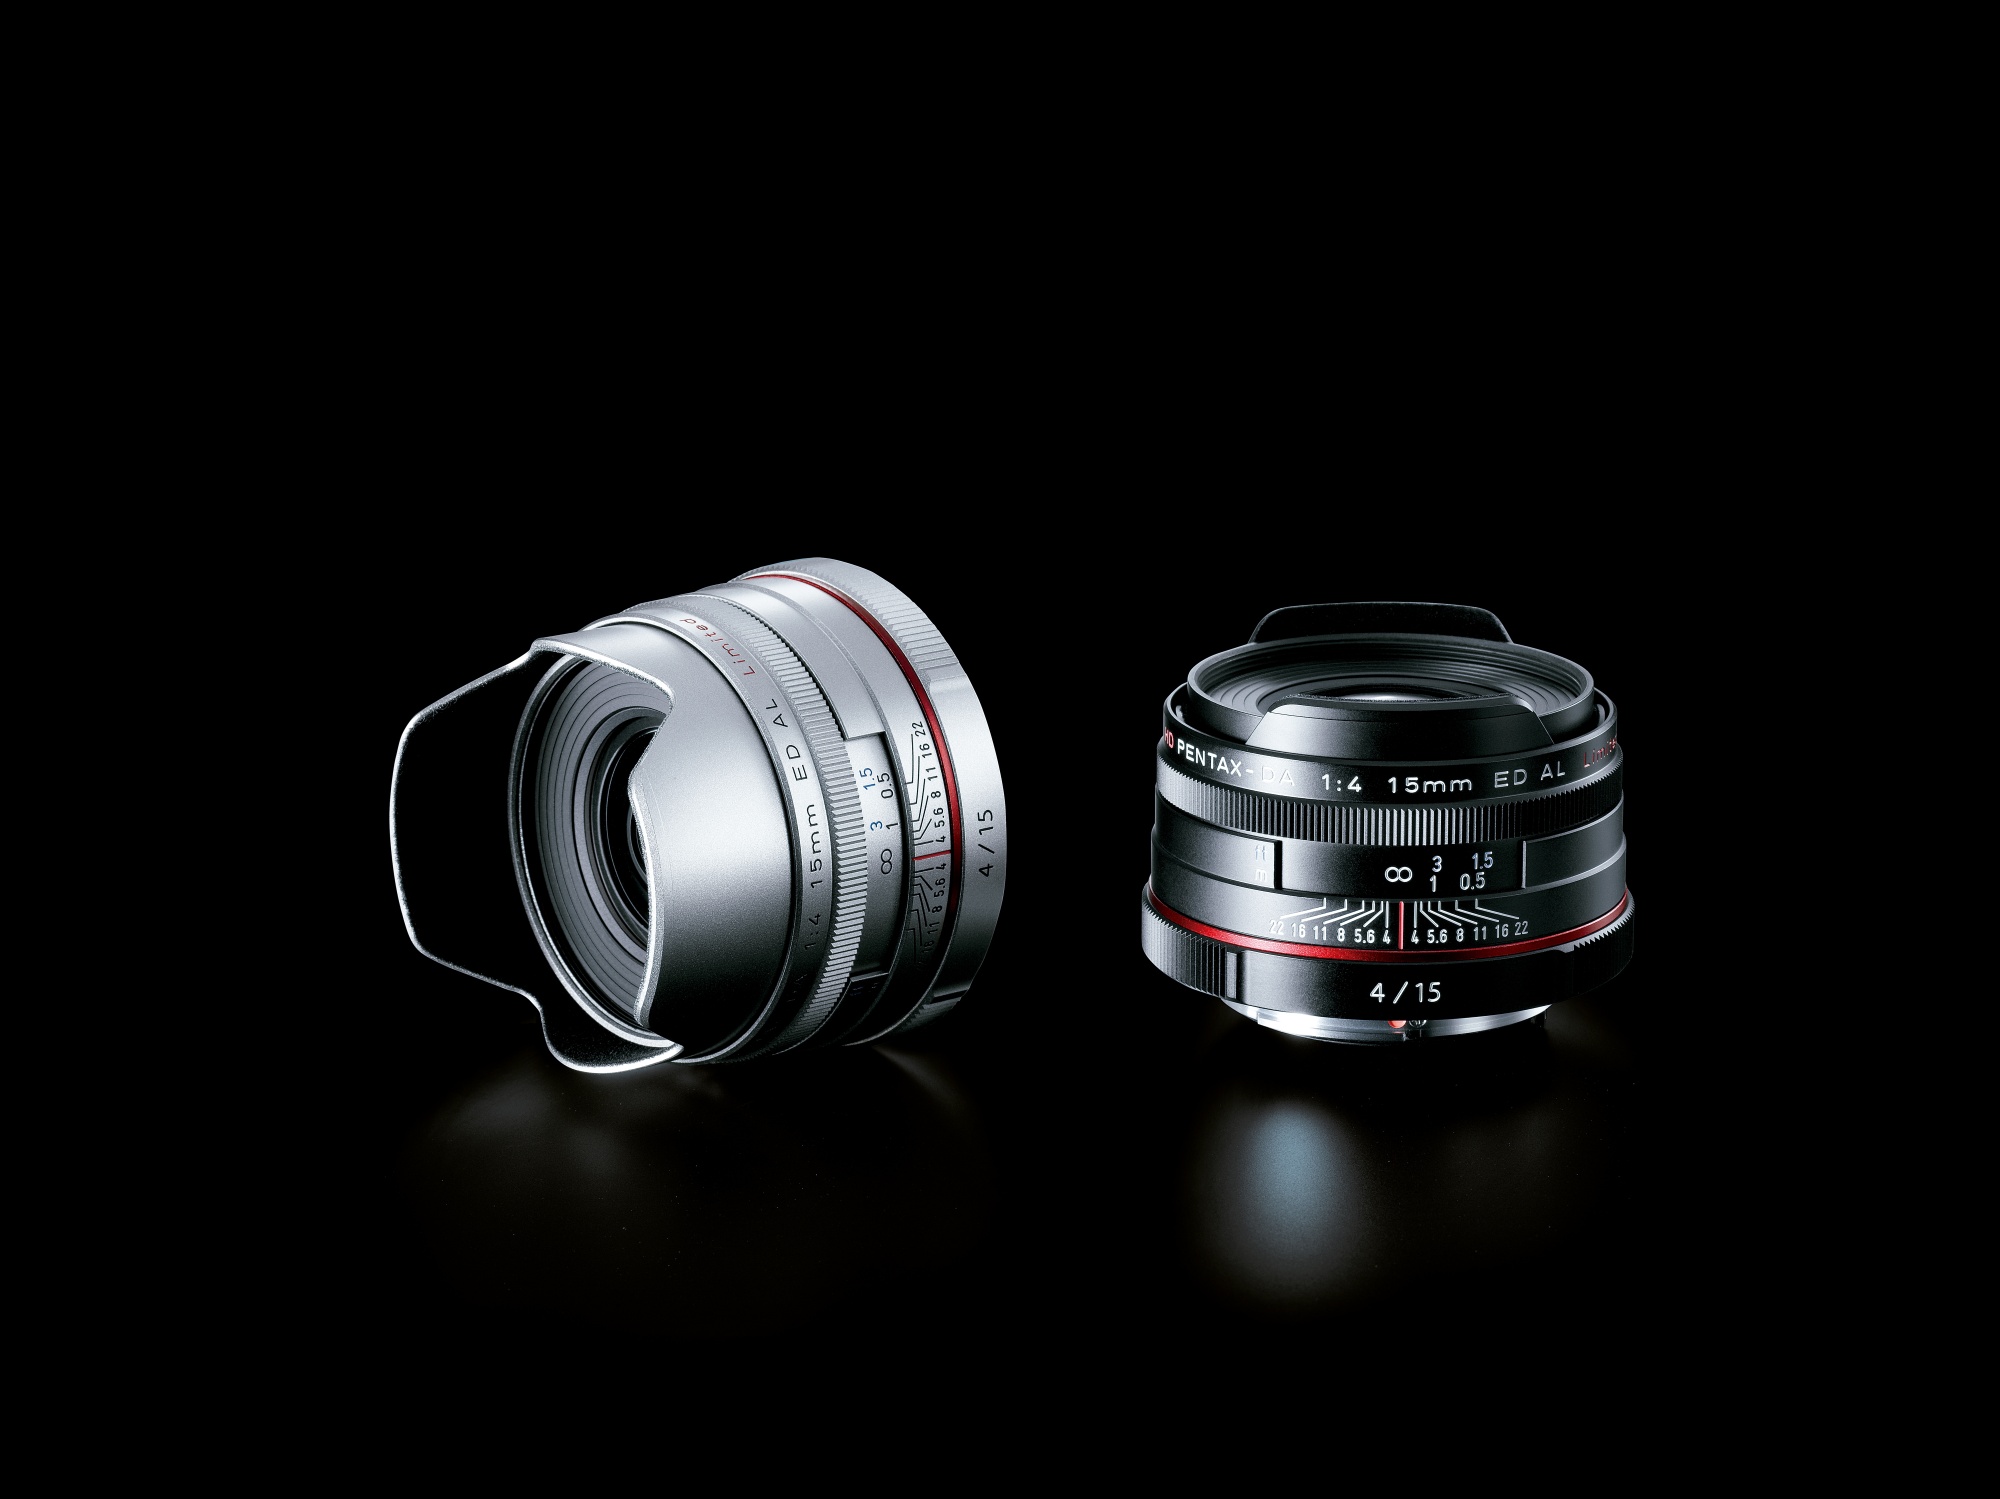 Limited al. Pentax Limited Lens. Объектив Pentax SMC da 15mm f/4 al Limited.